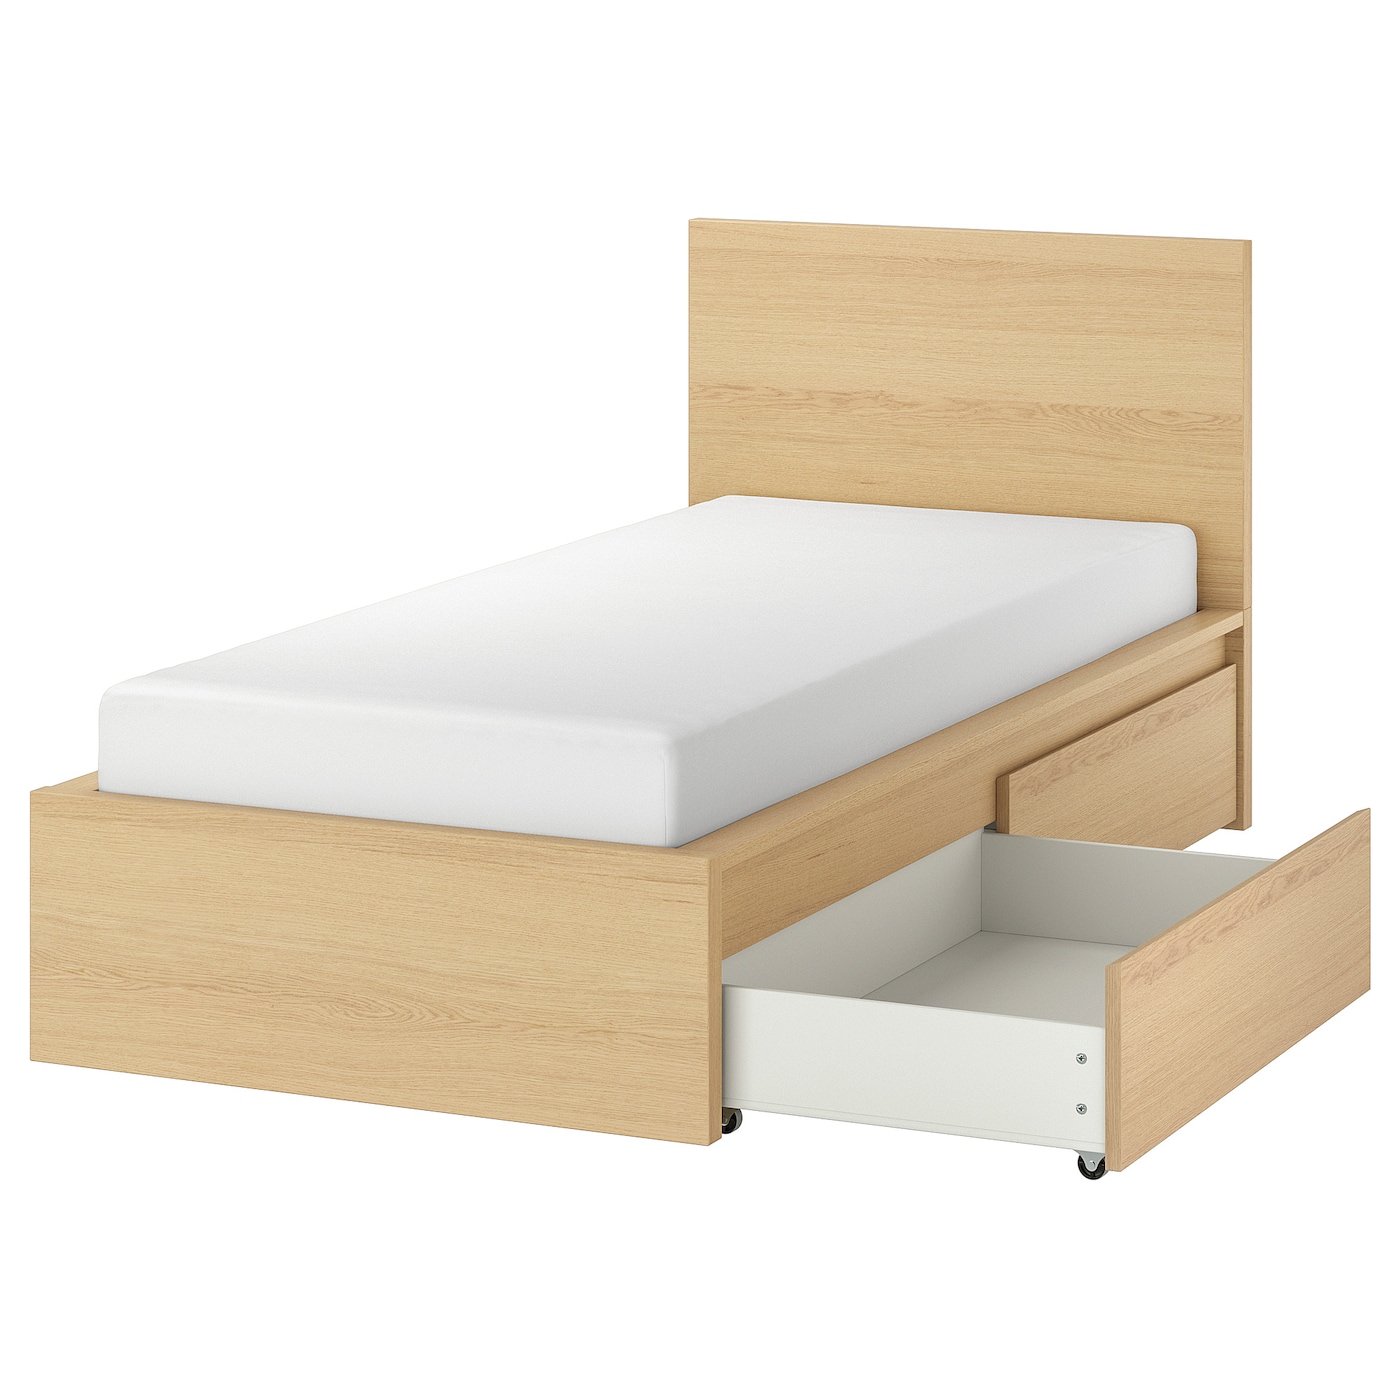 Каркас кровати с 2 ящиками для хранения - IKEA MALM, 200х90 см, под беленый дуб, МАЛЬМ ИКЕА